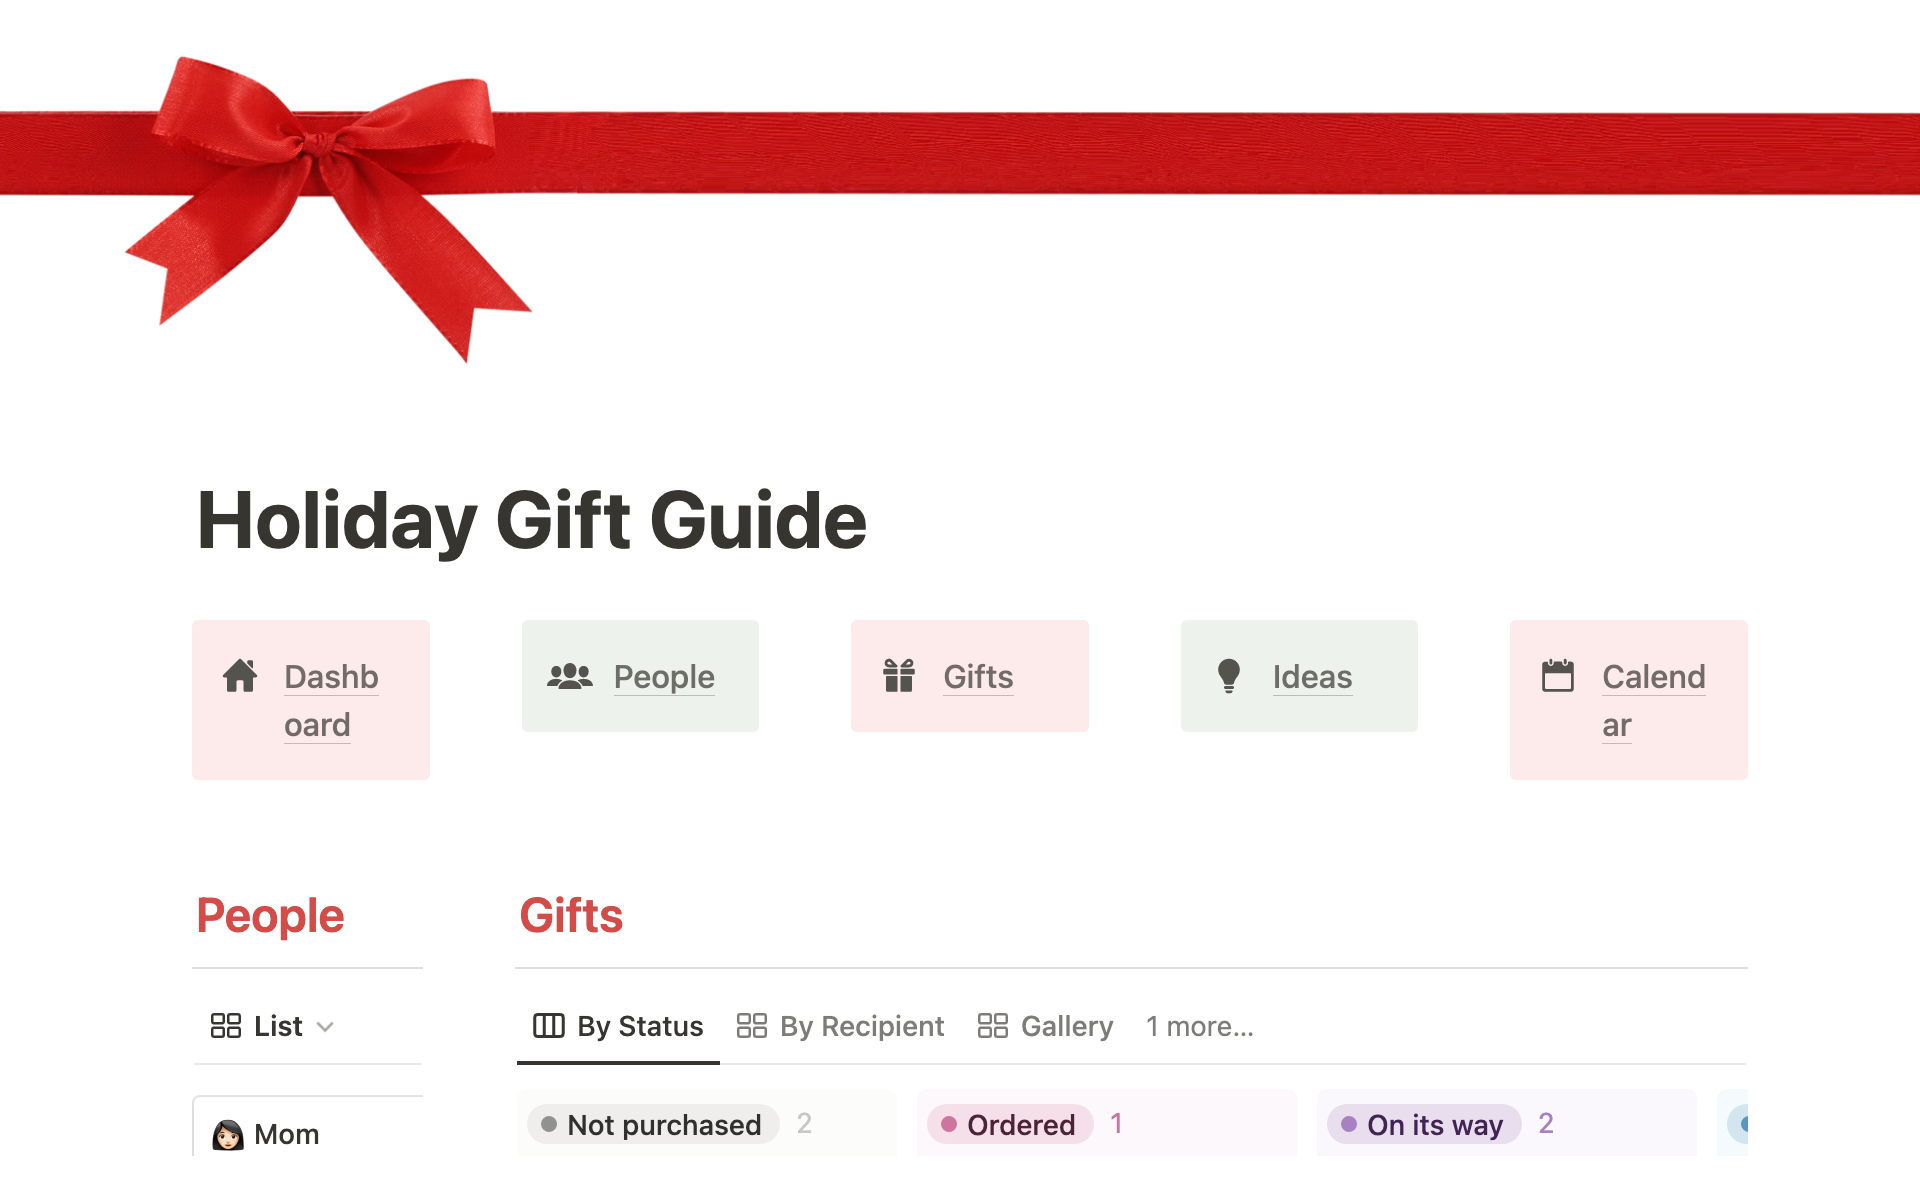 Aperçu du modèle de Holiday Gift Guide